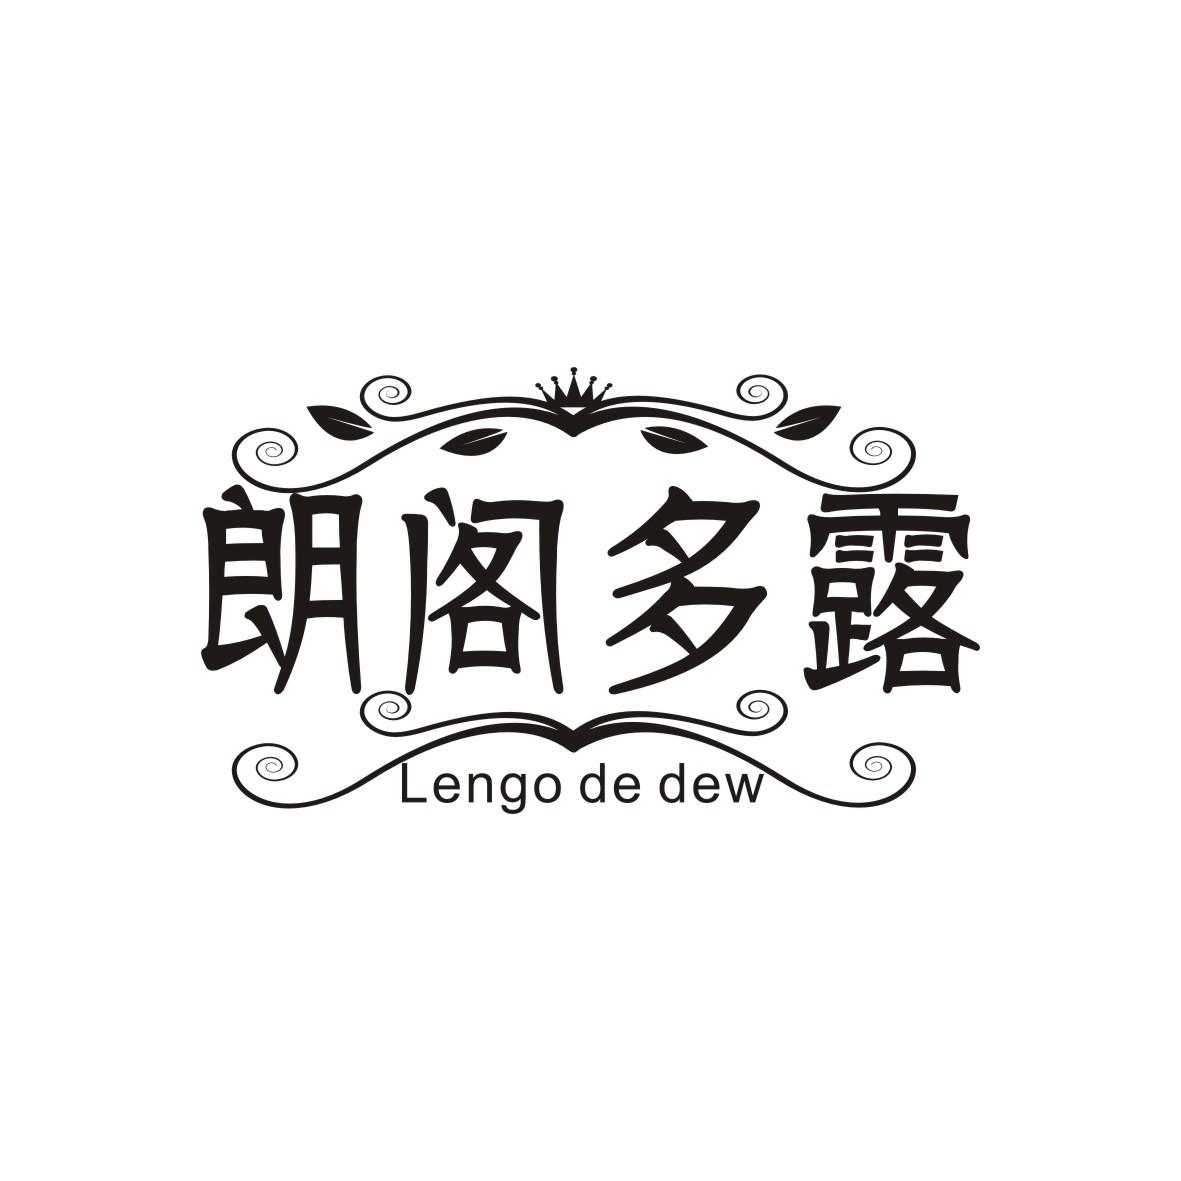 朗阁多露 
Lengo de dew